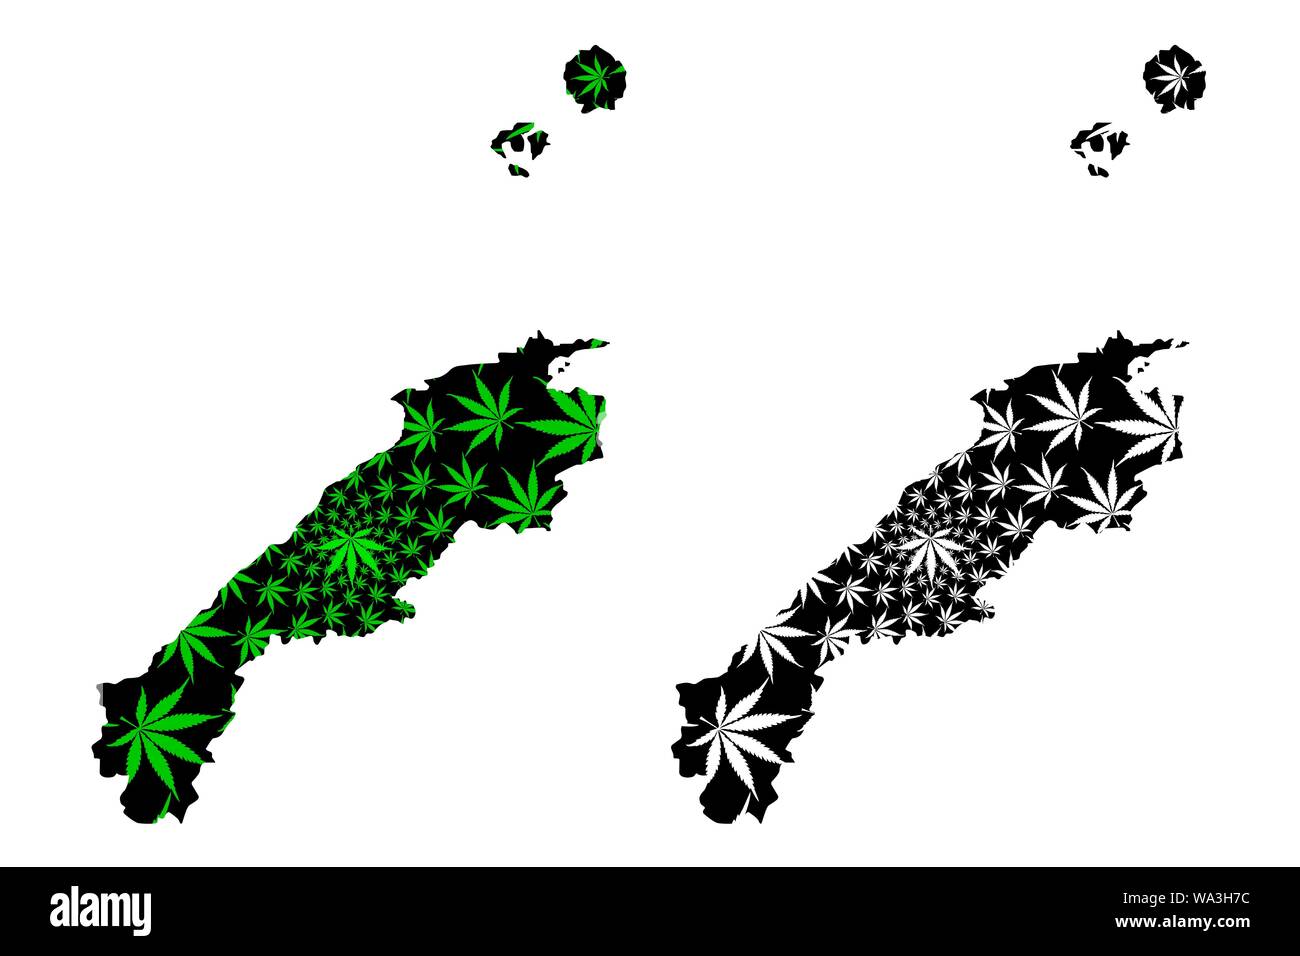 Präfektur Shimane (administrative divisions von Japan, Präfekturen Japans) Karte ist Cannabis blatt grün und schwarz gestaltet, Shimane Karte aus mariju Stock Vektor